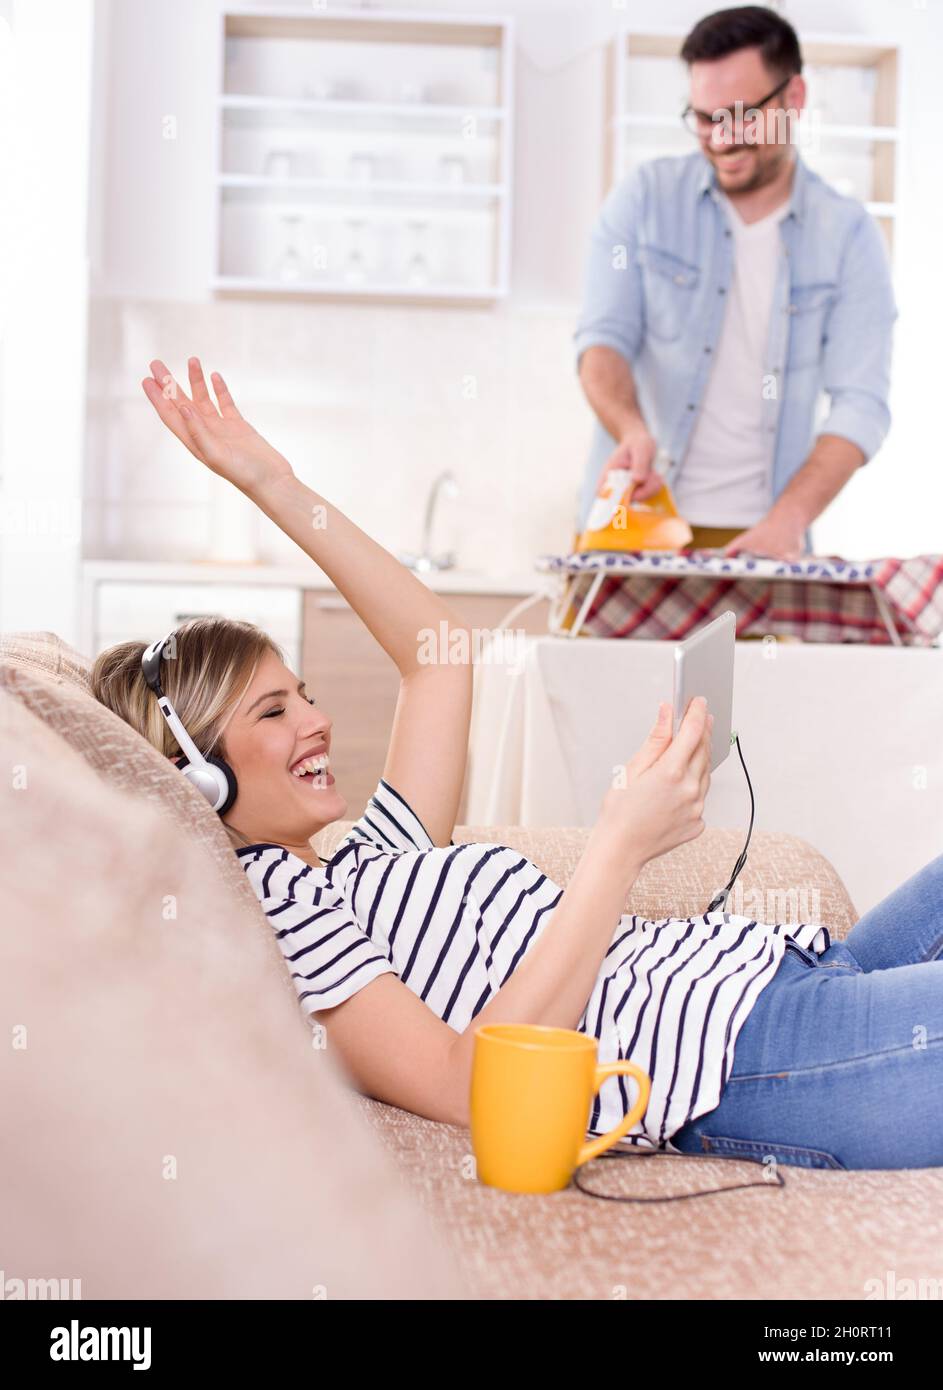 Schöne junge Frau, die sich auf dem Sofa ausruht und Musik auf Kopfhörern hört, während der Mann ihr Hemd im Hintergrund bügelt. Ehemann macht Aufgaben Konzept Stockfoto